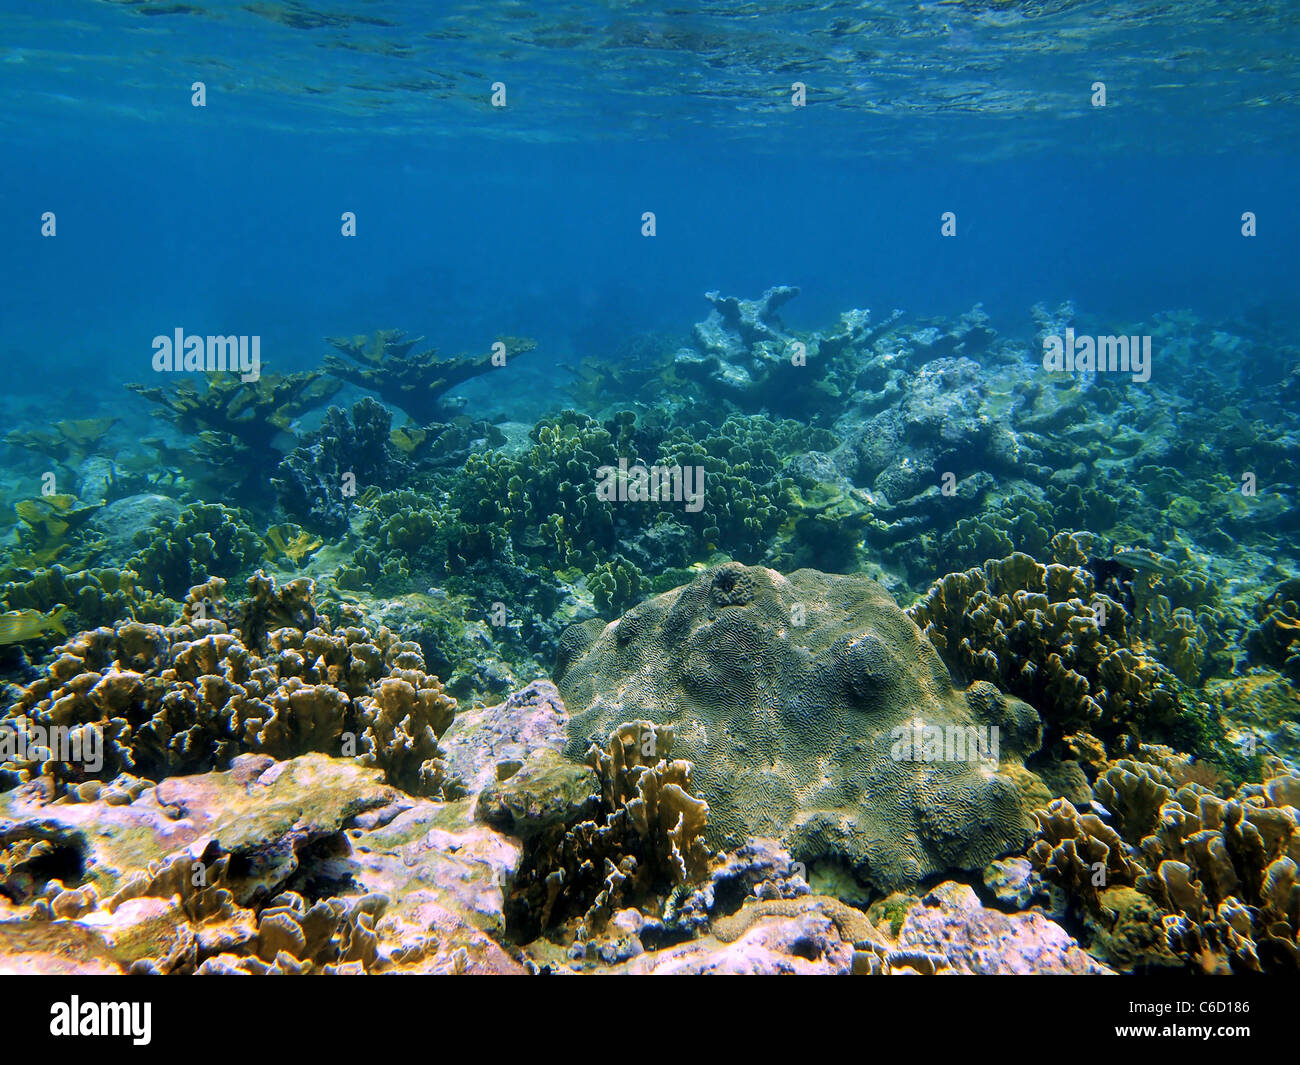 Underwater seascape coral reef in the Caribbean sea, Bocas del Toro, Panama, Central America Stock Photo